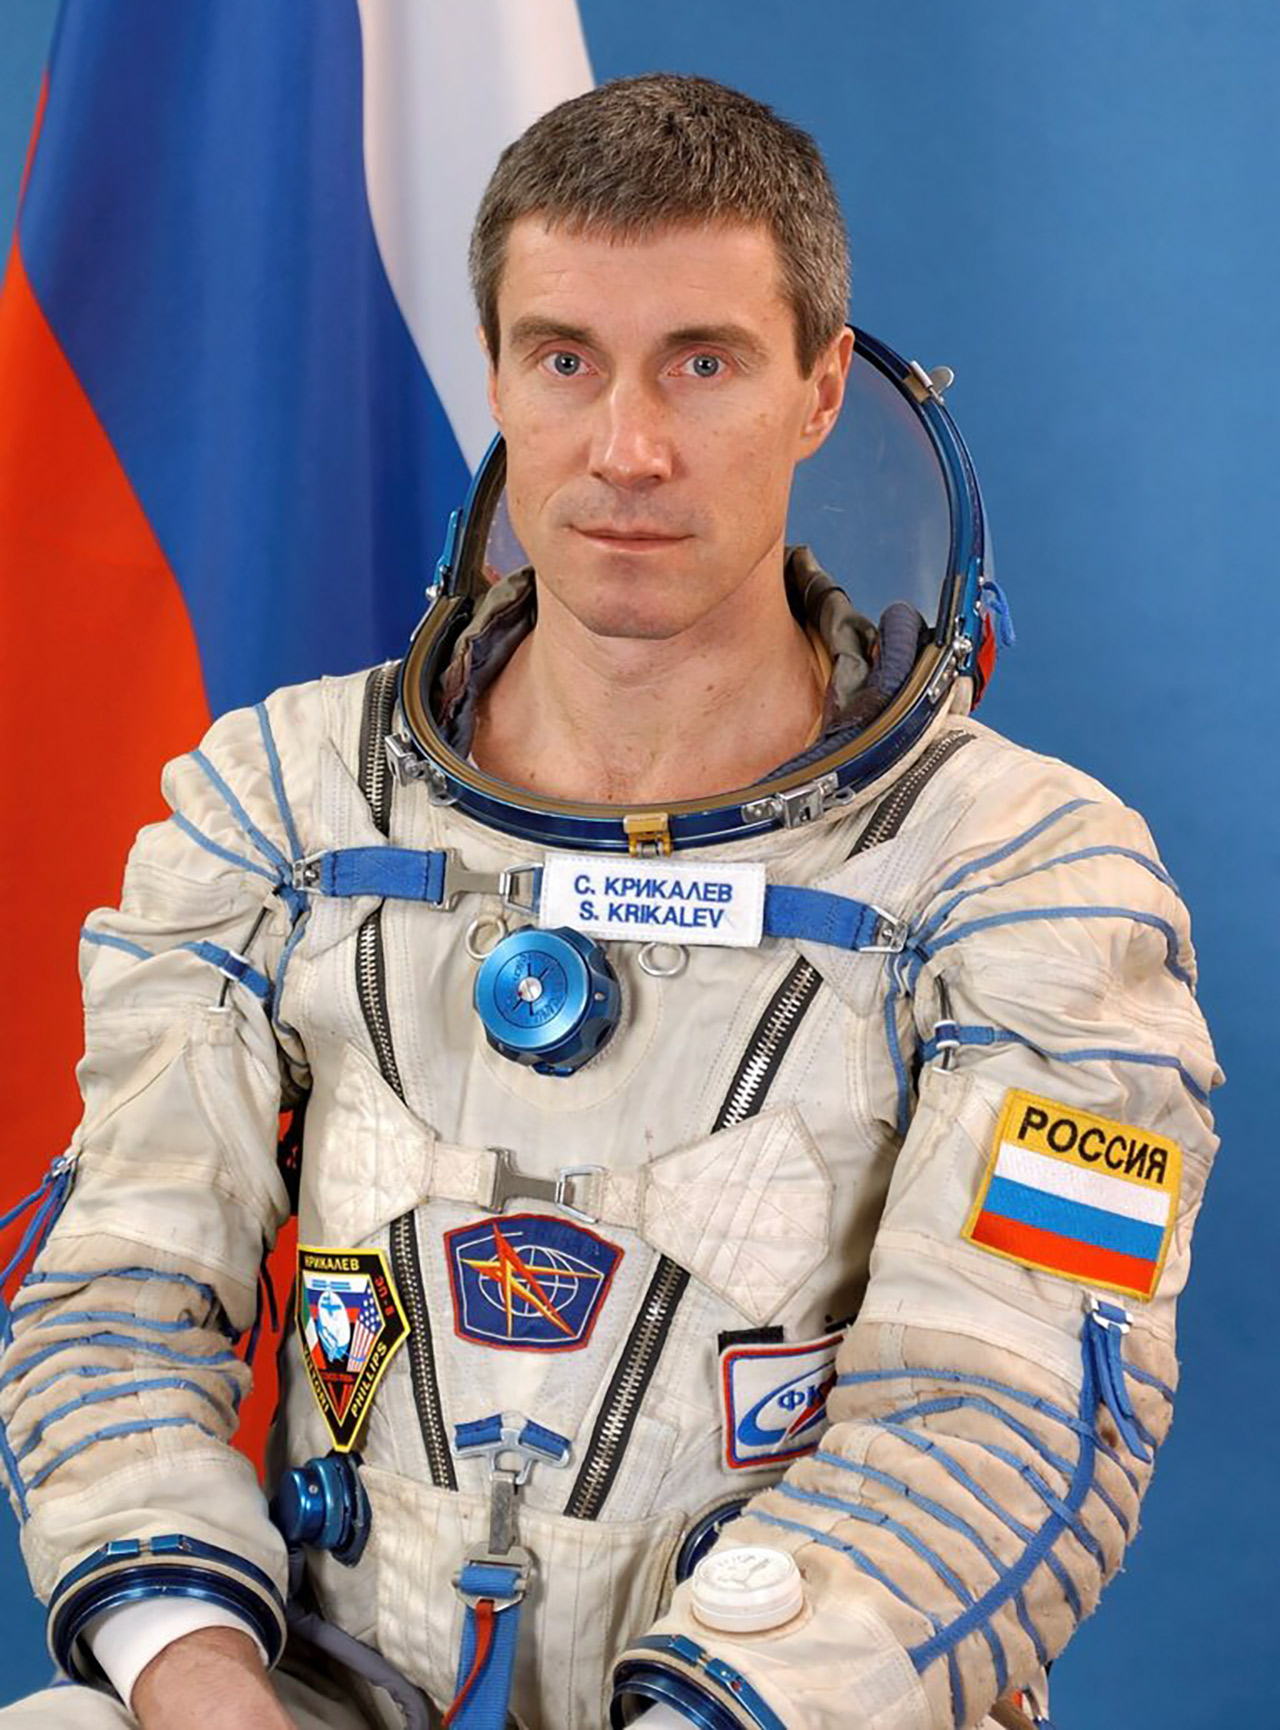 311 Gün Boyunca Uzayda Mahsur Kalan Sergei Krikalev’in Çarpıcı Hikâyesi